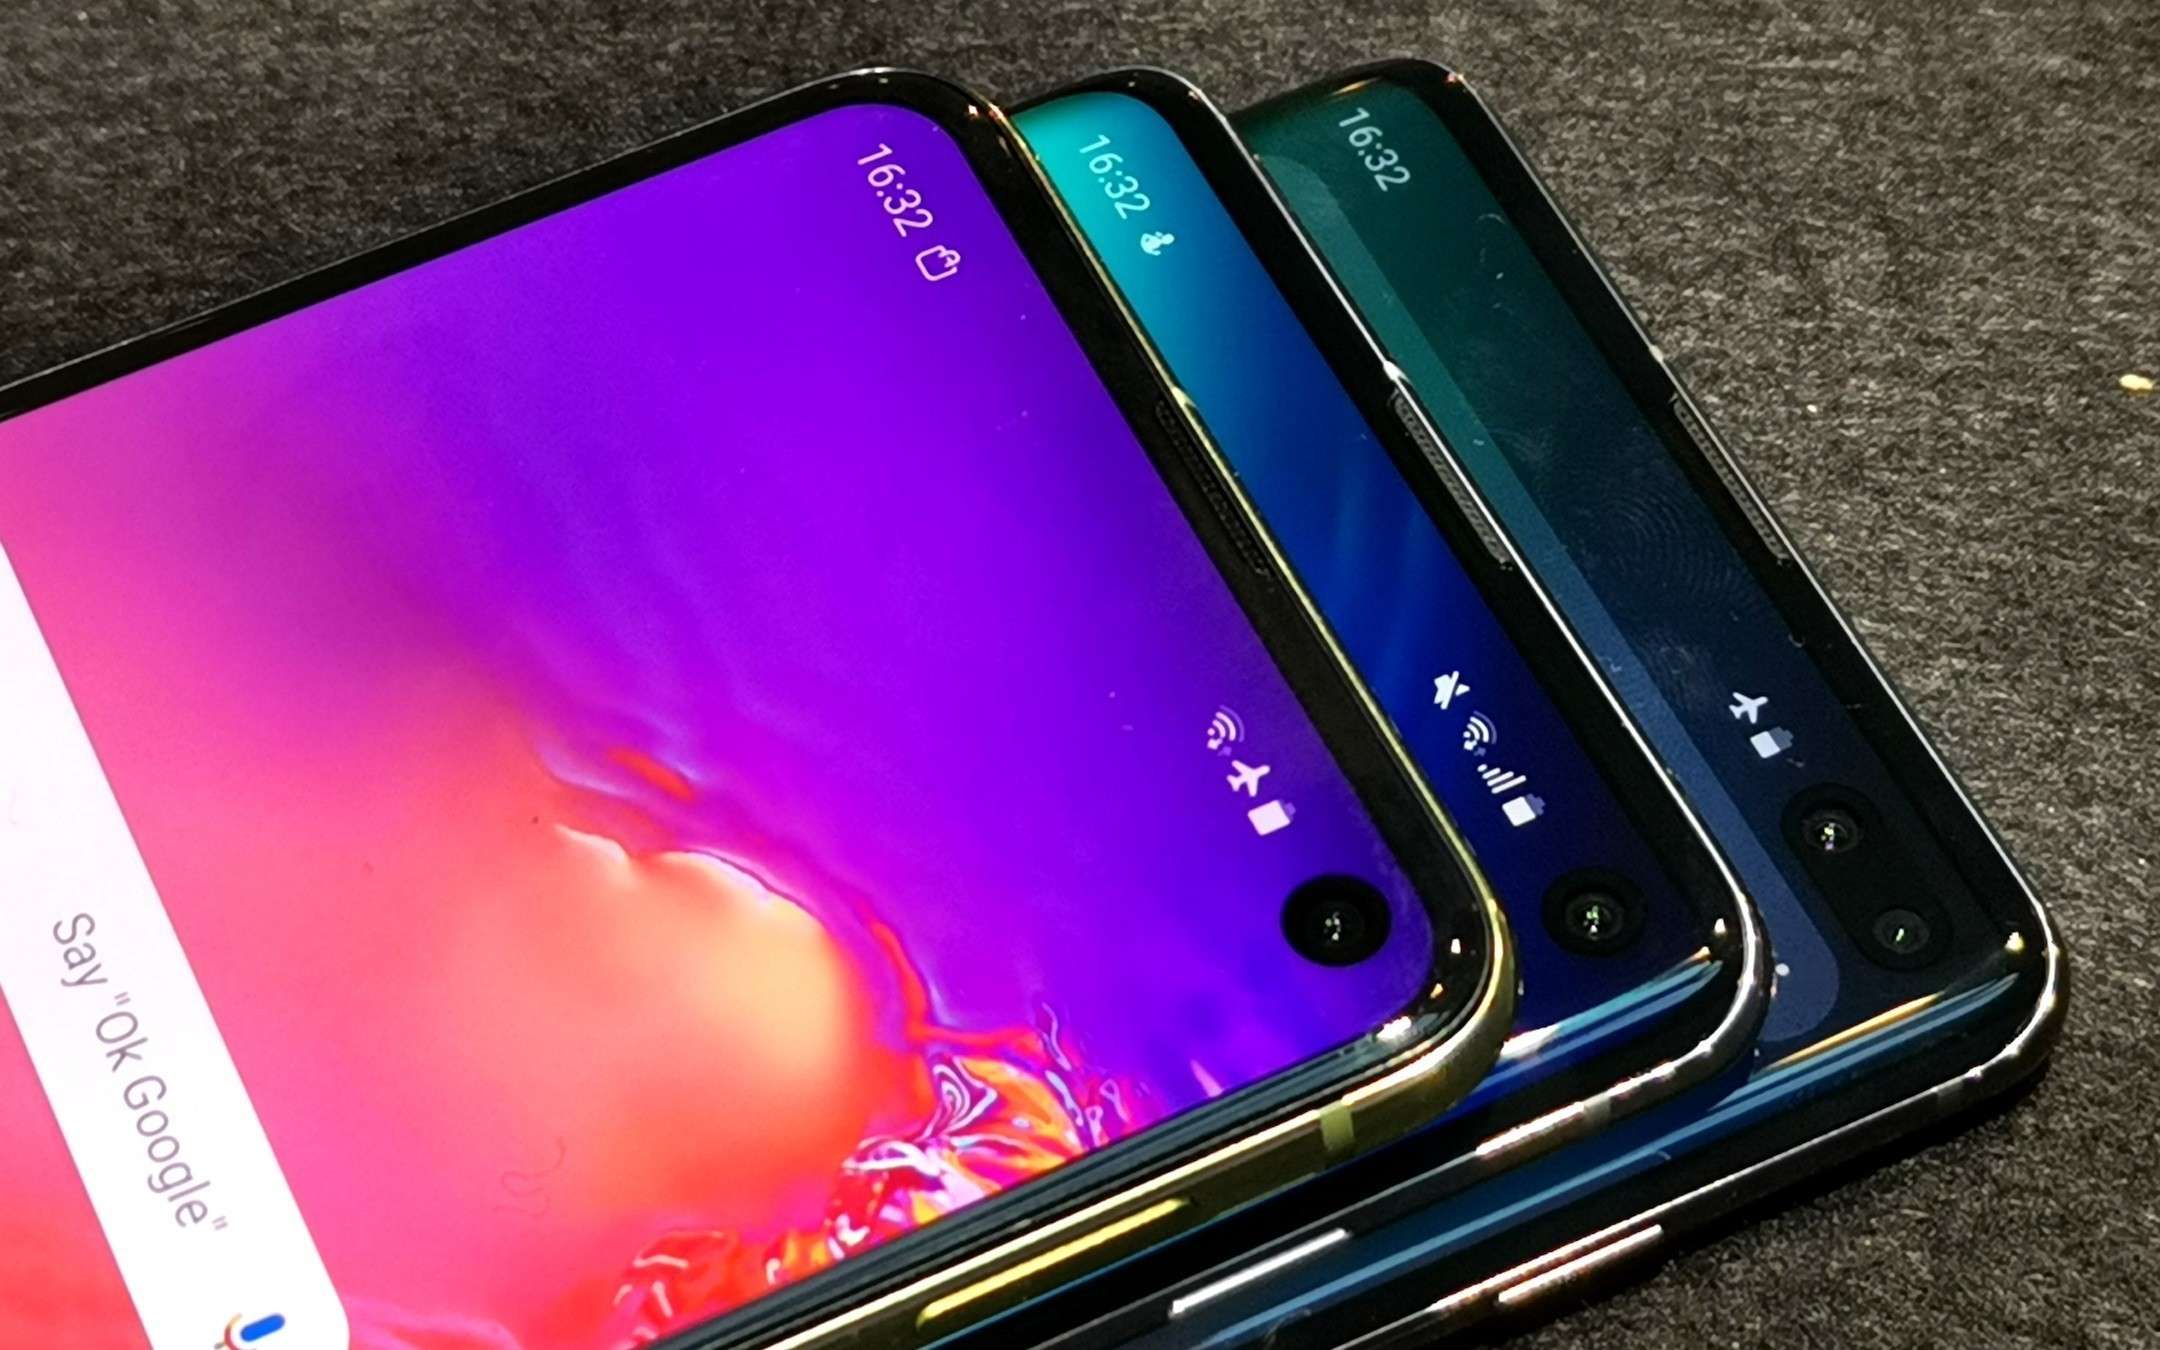 Samsung Galaxy S10e, S10 ed S10+: quale scegliere?